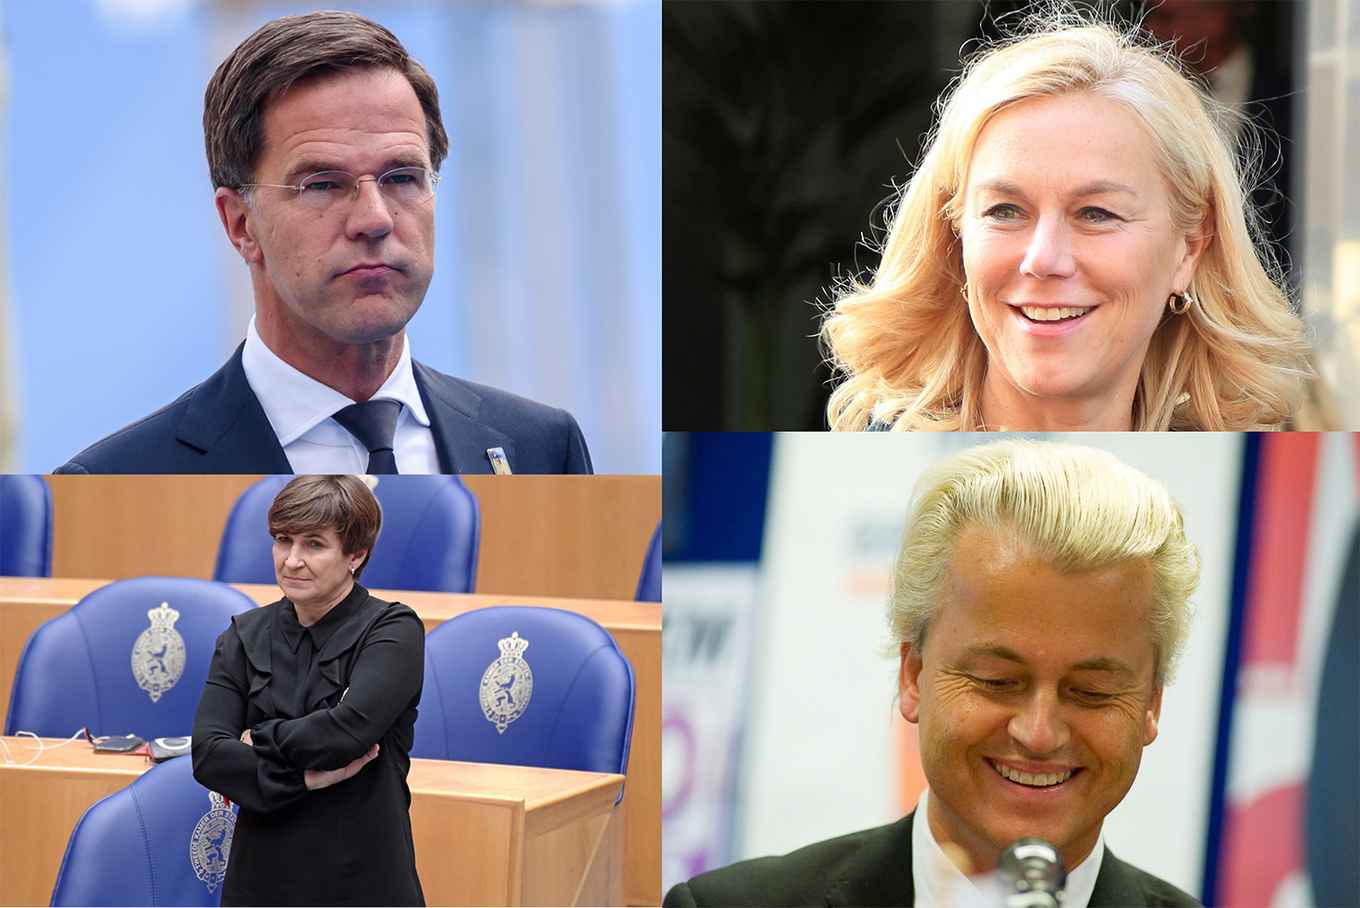 Met de klok mee: Mark Rutte (die fronst), Sigrid Kaag (die lacht), Geert Wilders (die lacht), Lilianne Ploumen (die nors kijkt)